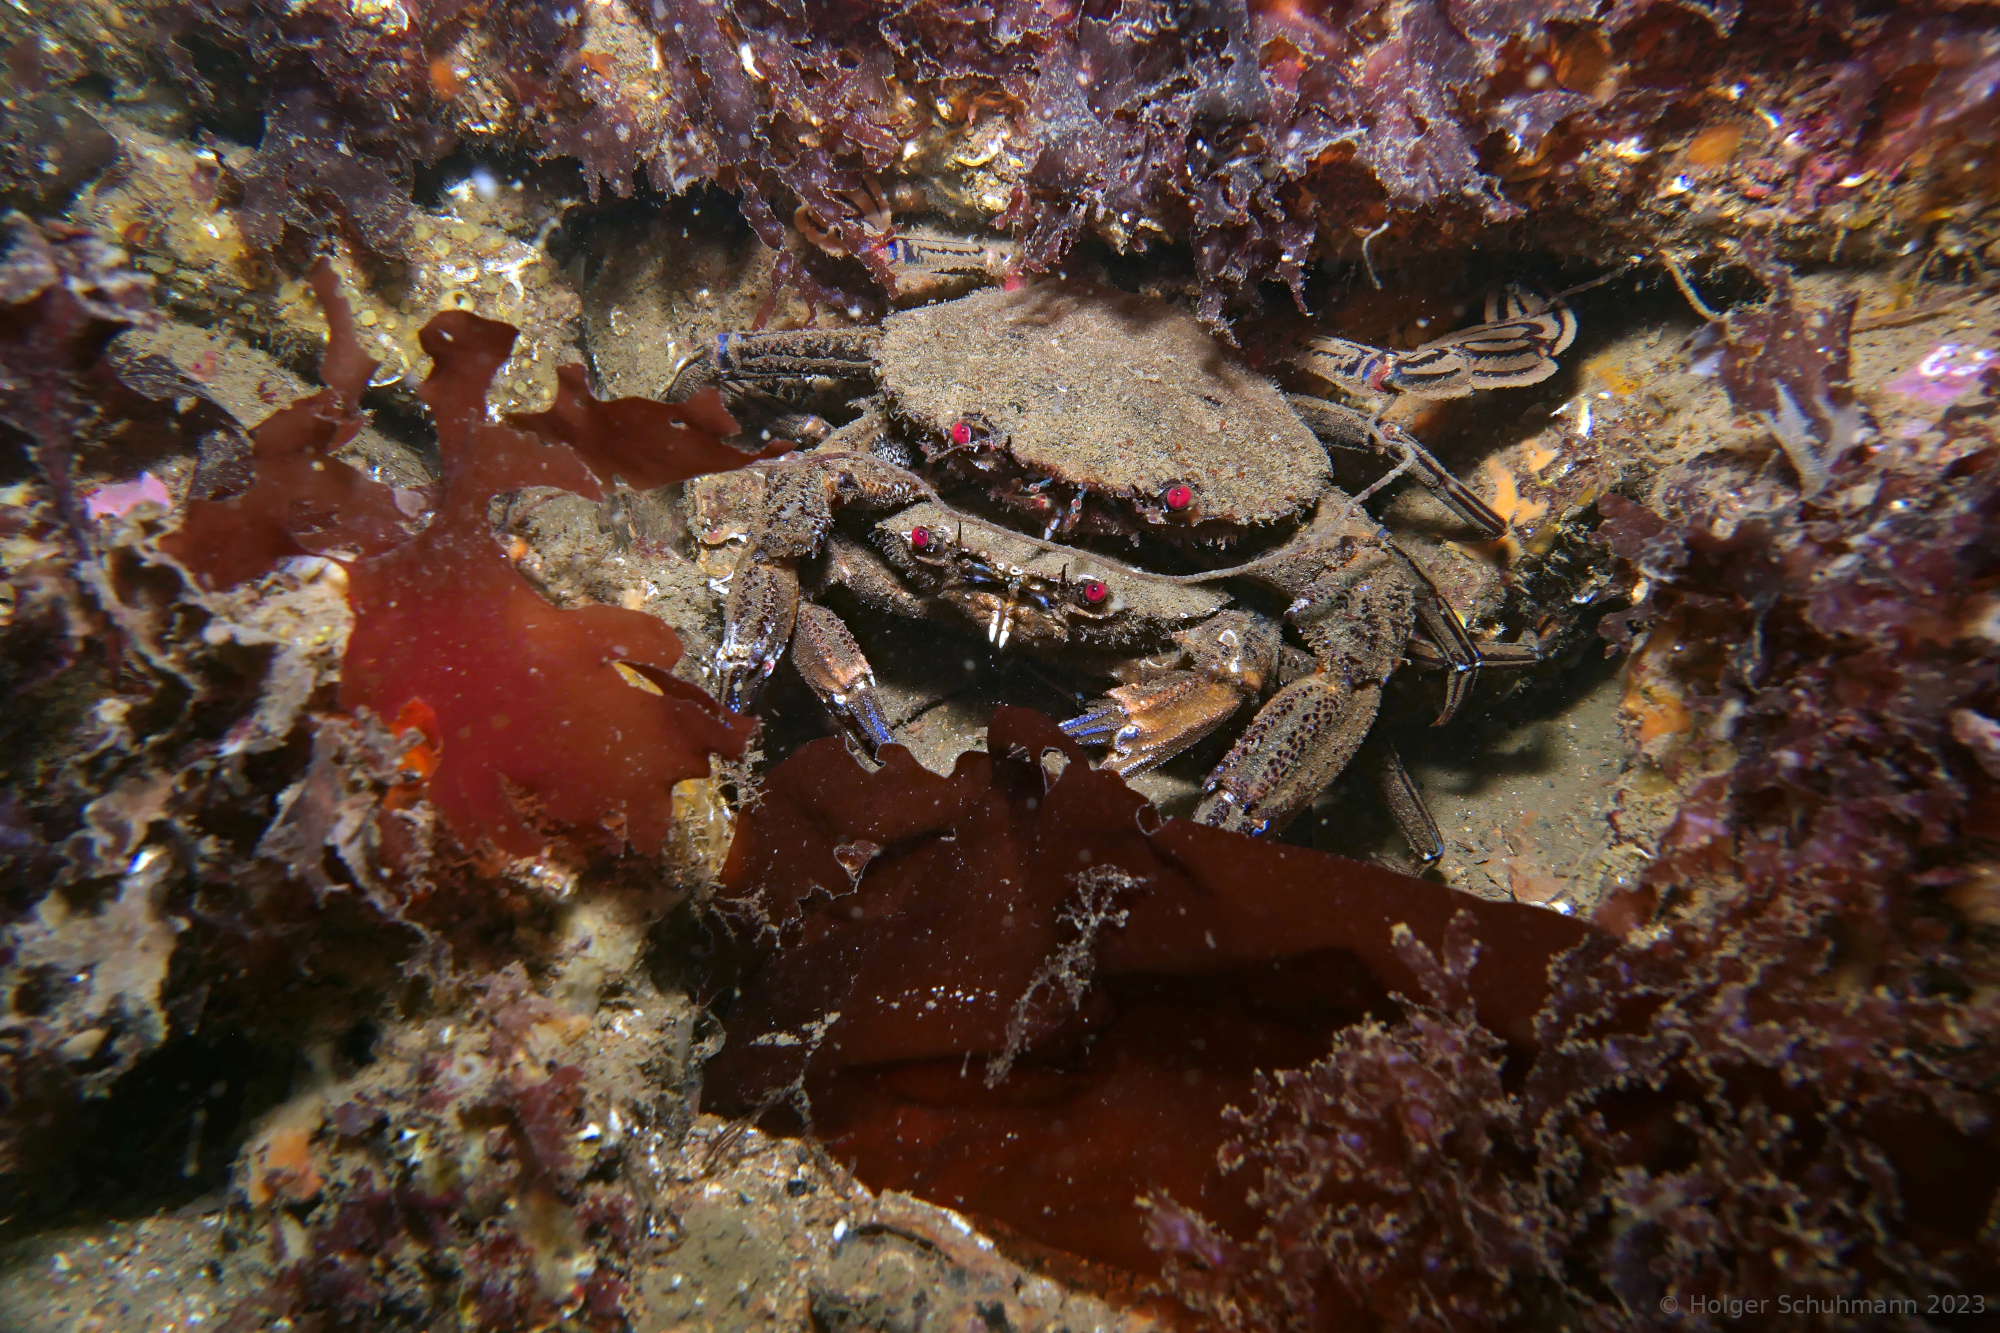 Mating velvet swimming crabs